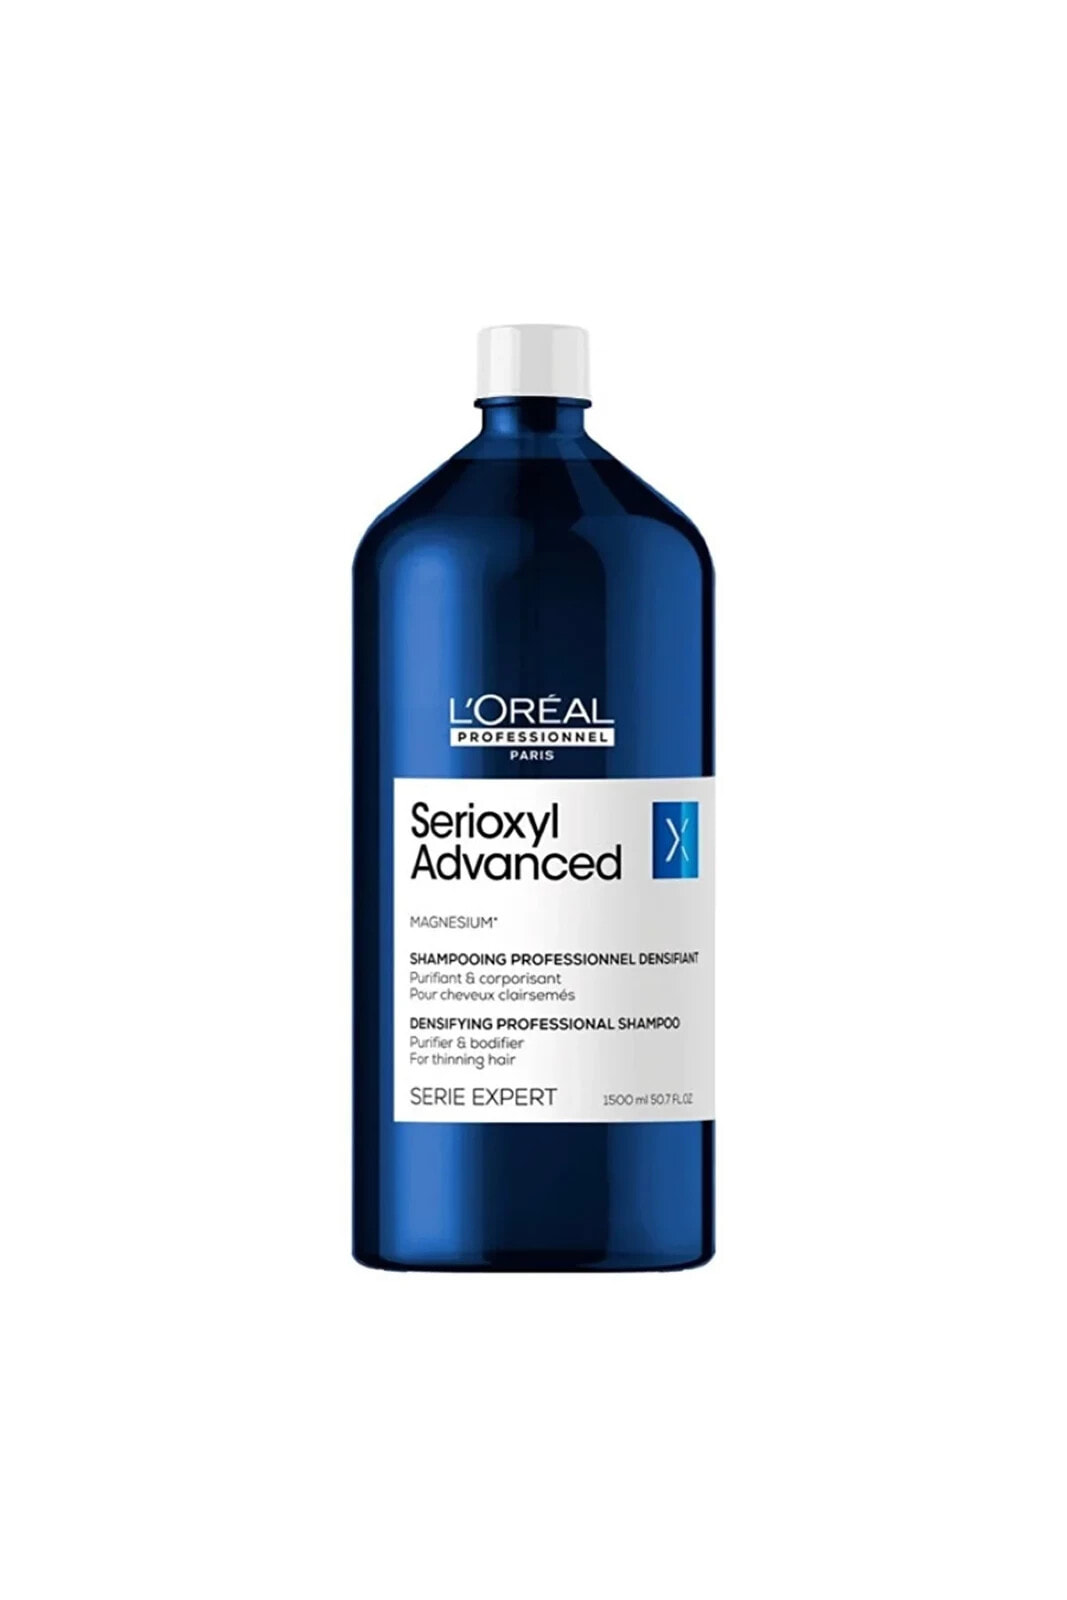 Loreal Serioxyl Advanced Yoğunluğunu Kaybetmiş Saçlar İçin Geri Kazandıran Şampuan1500ml CYT46431319